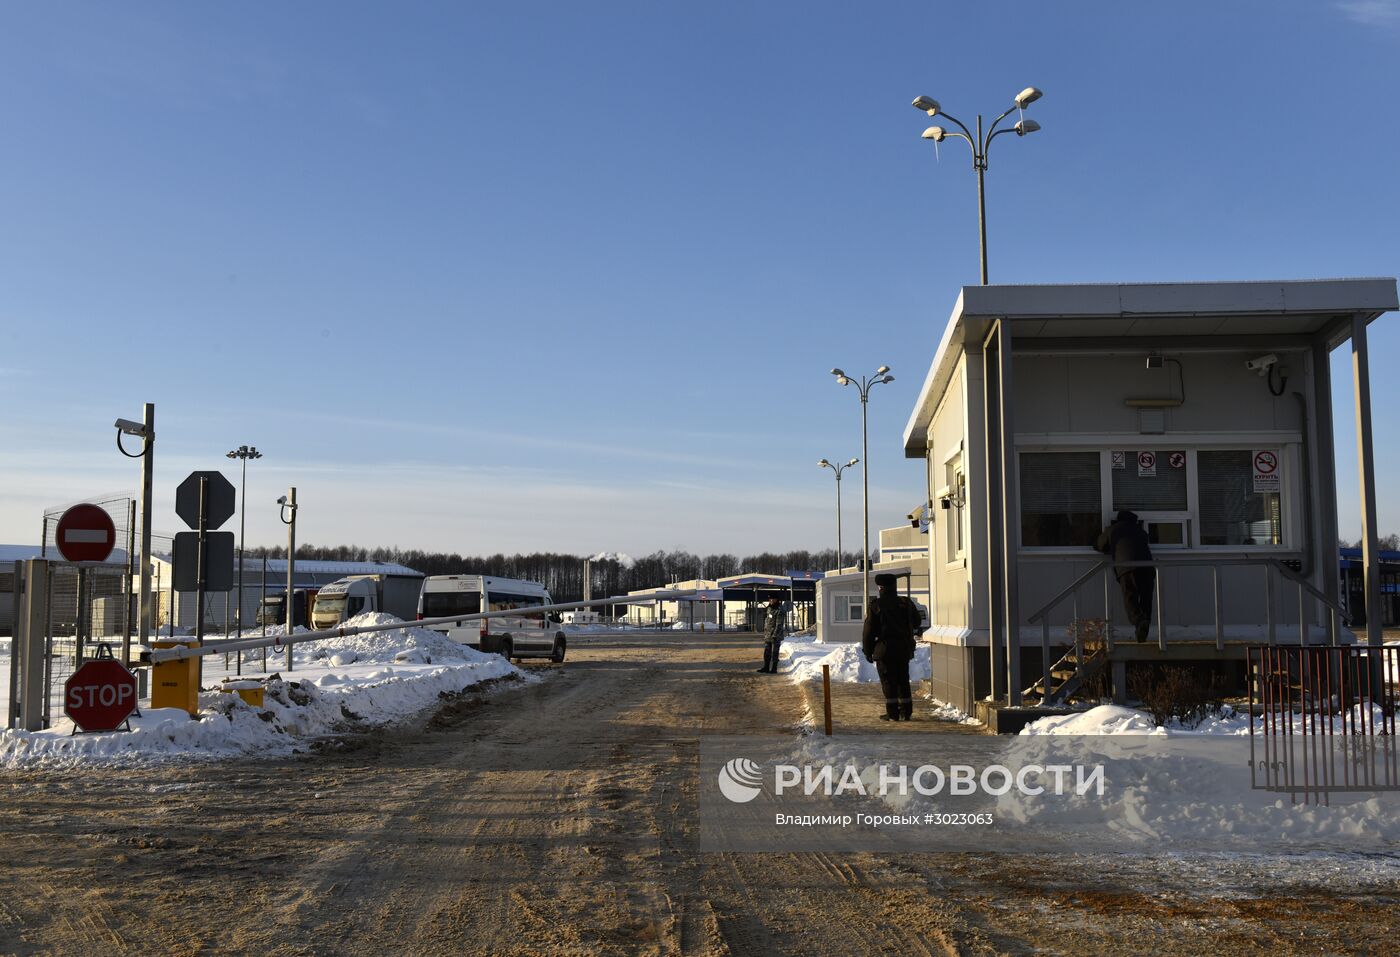 Пограничная зона установлена на границе России с Белоруссией